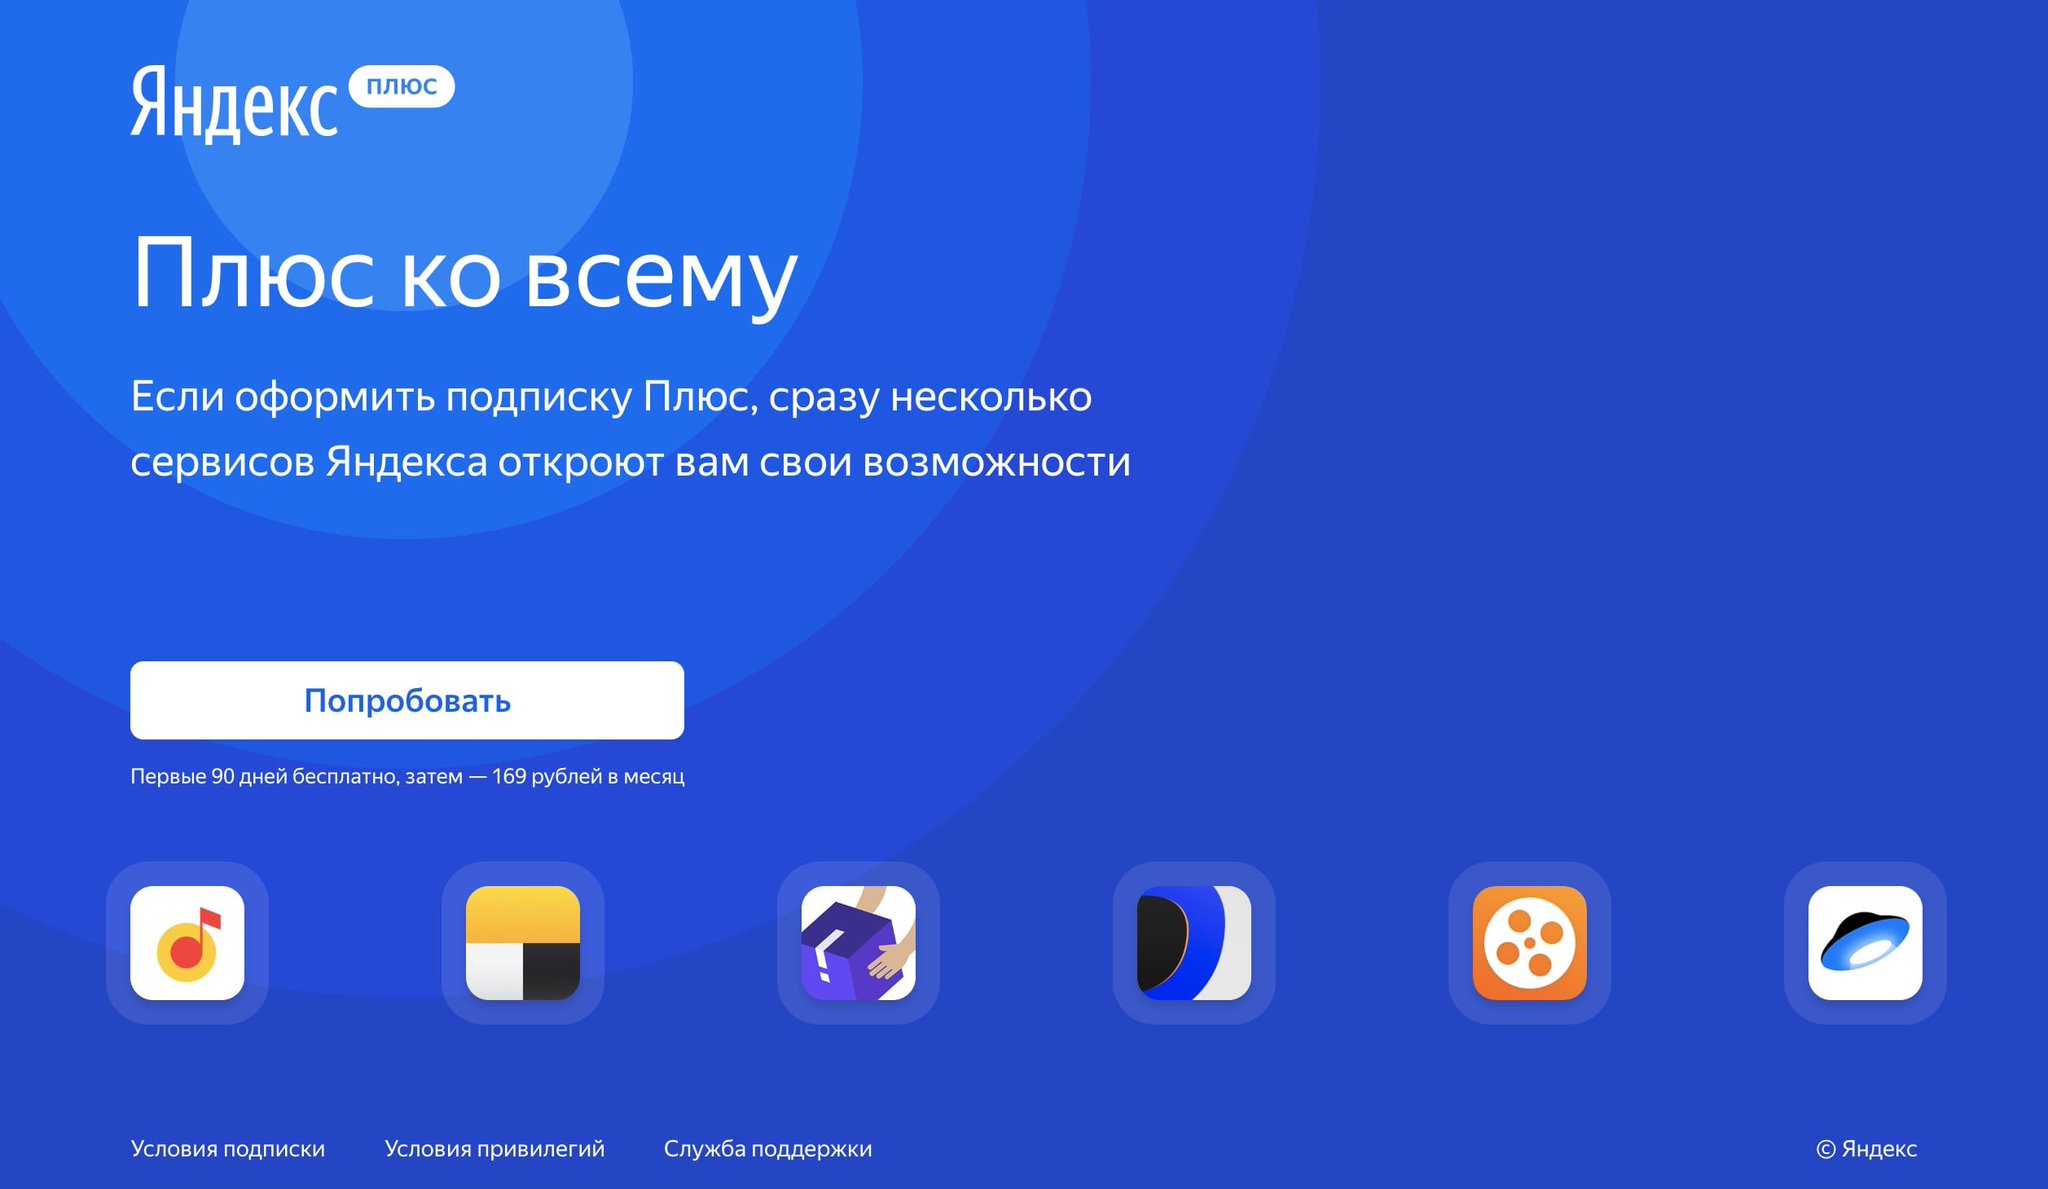 Яндекс плюс: что это, сколько стоит подписка и как отключиться от сервиса